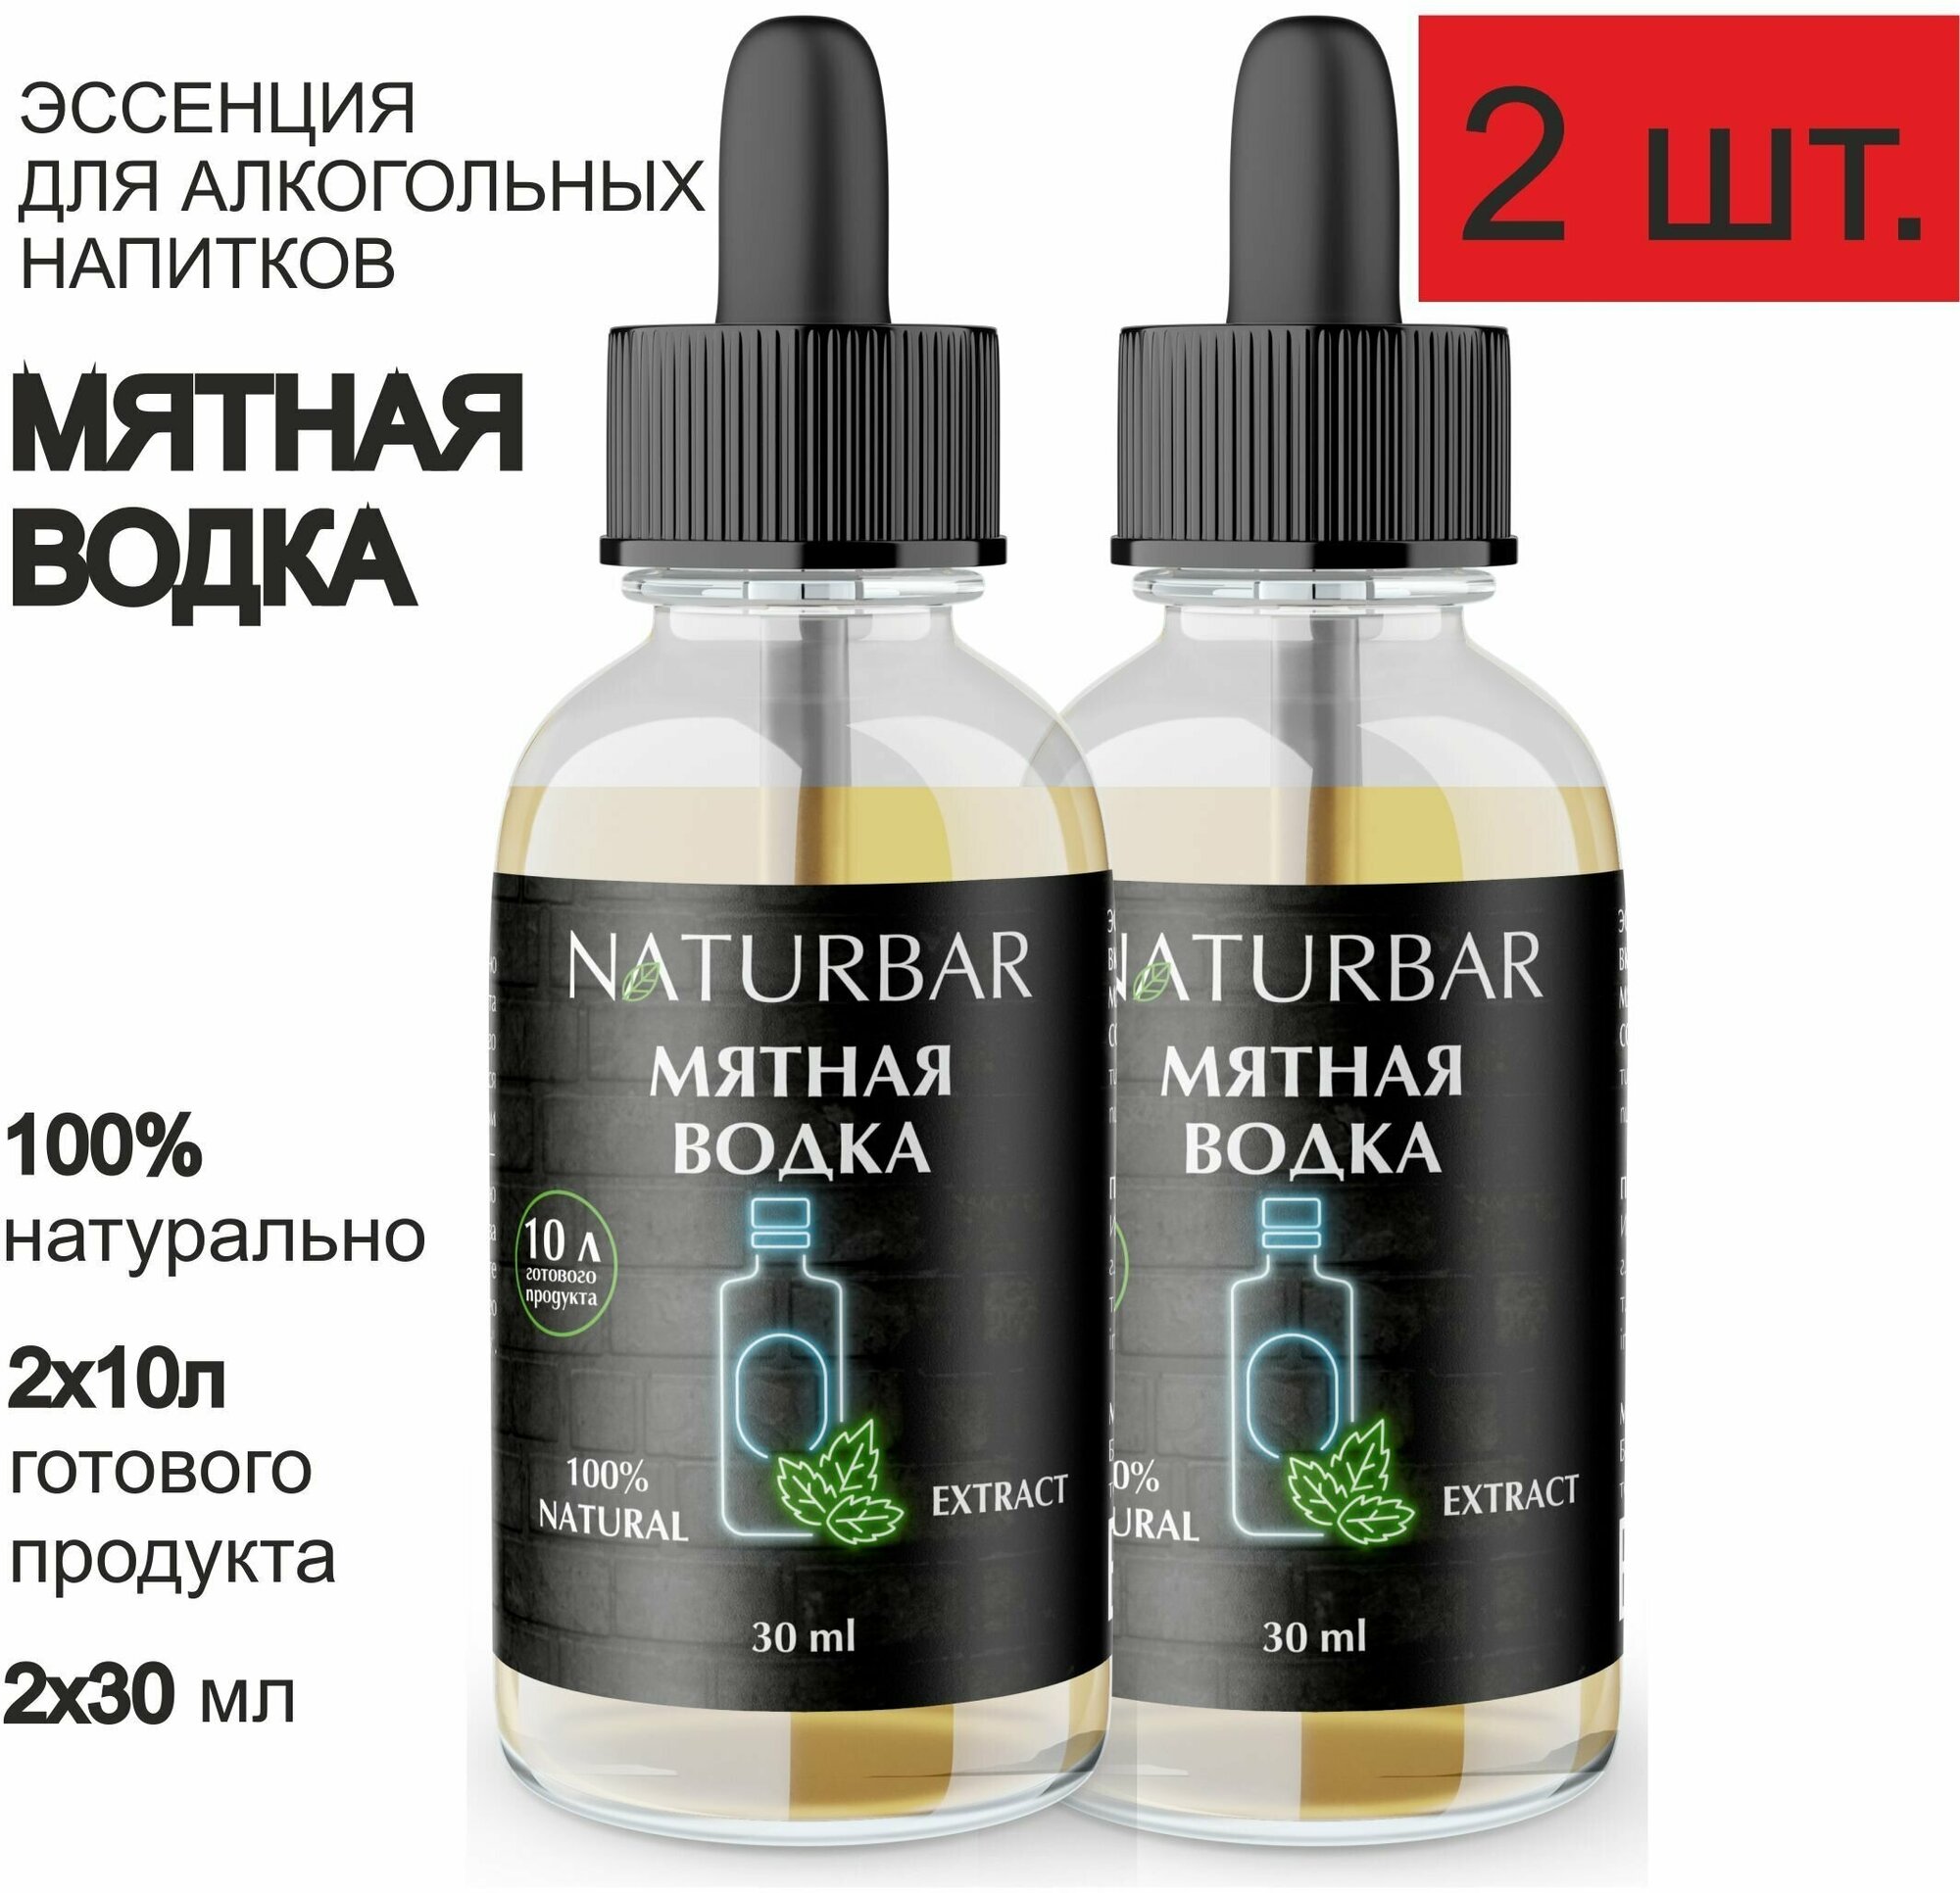 Эссенция мятная водка Mint vodka вкусовой концентрат (ароматизатор пищевой), для самогона, 30 мл - 2 шт.